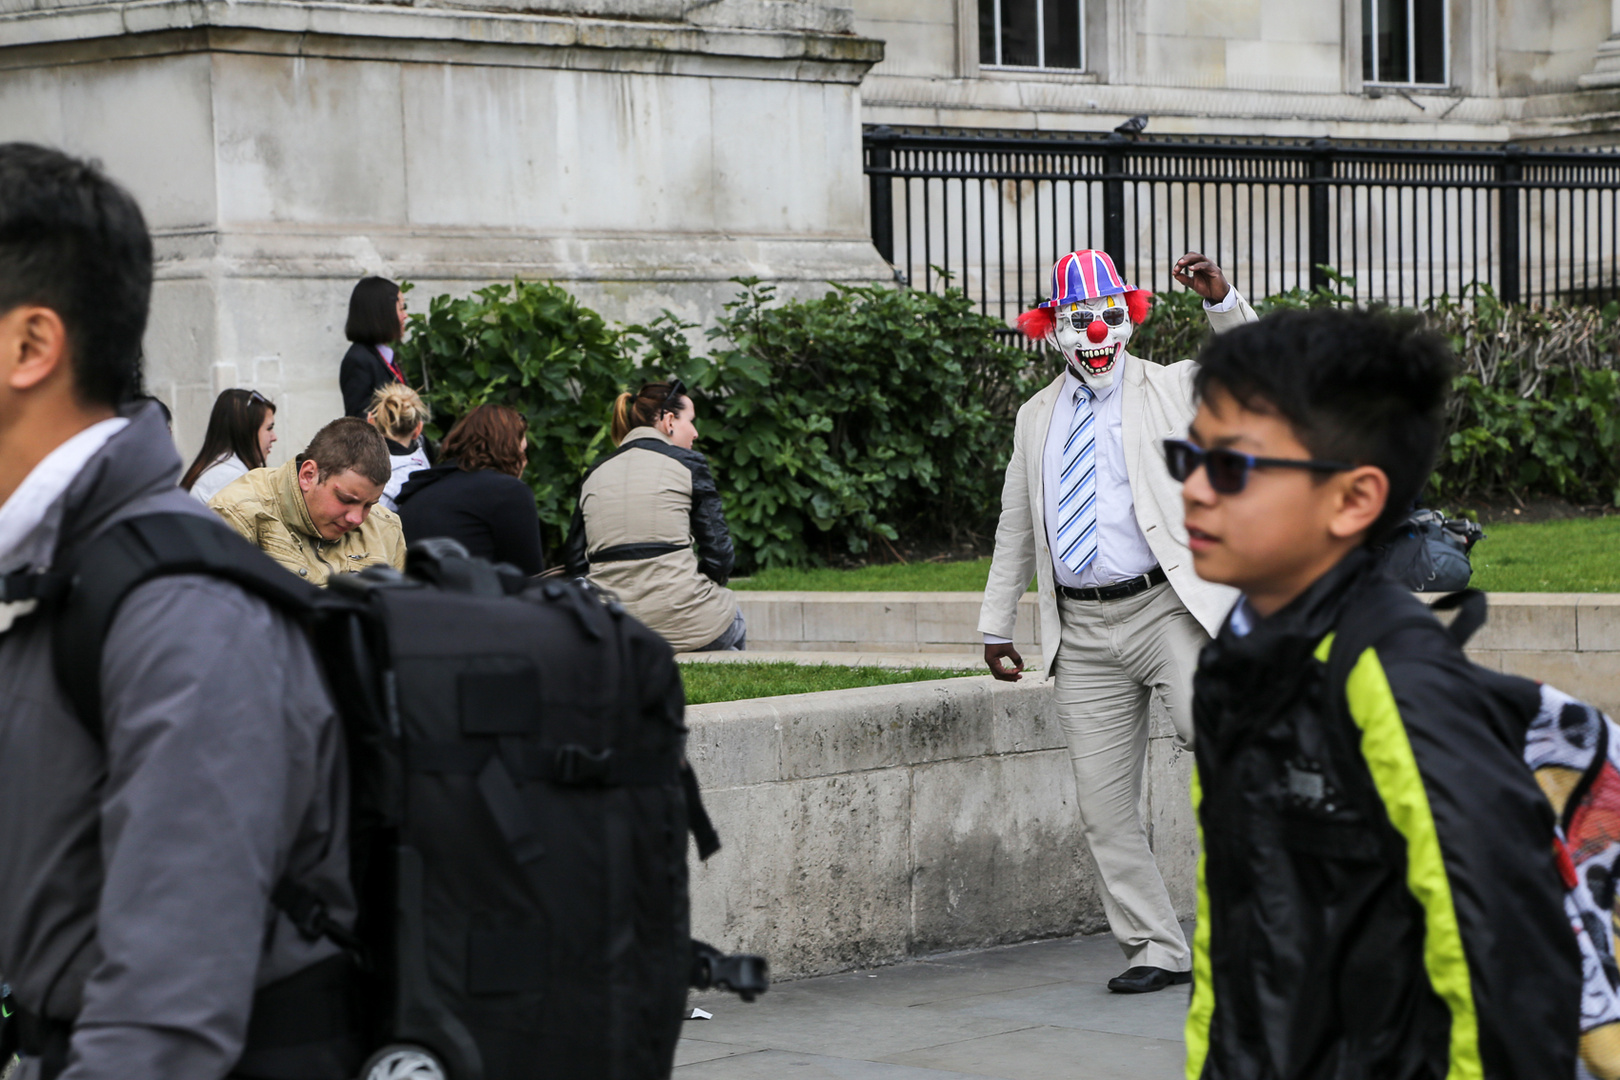 Joker am Trafalgar Square